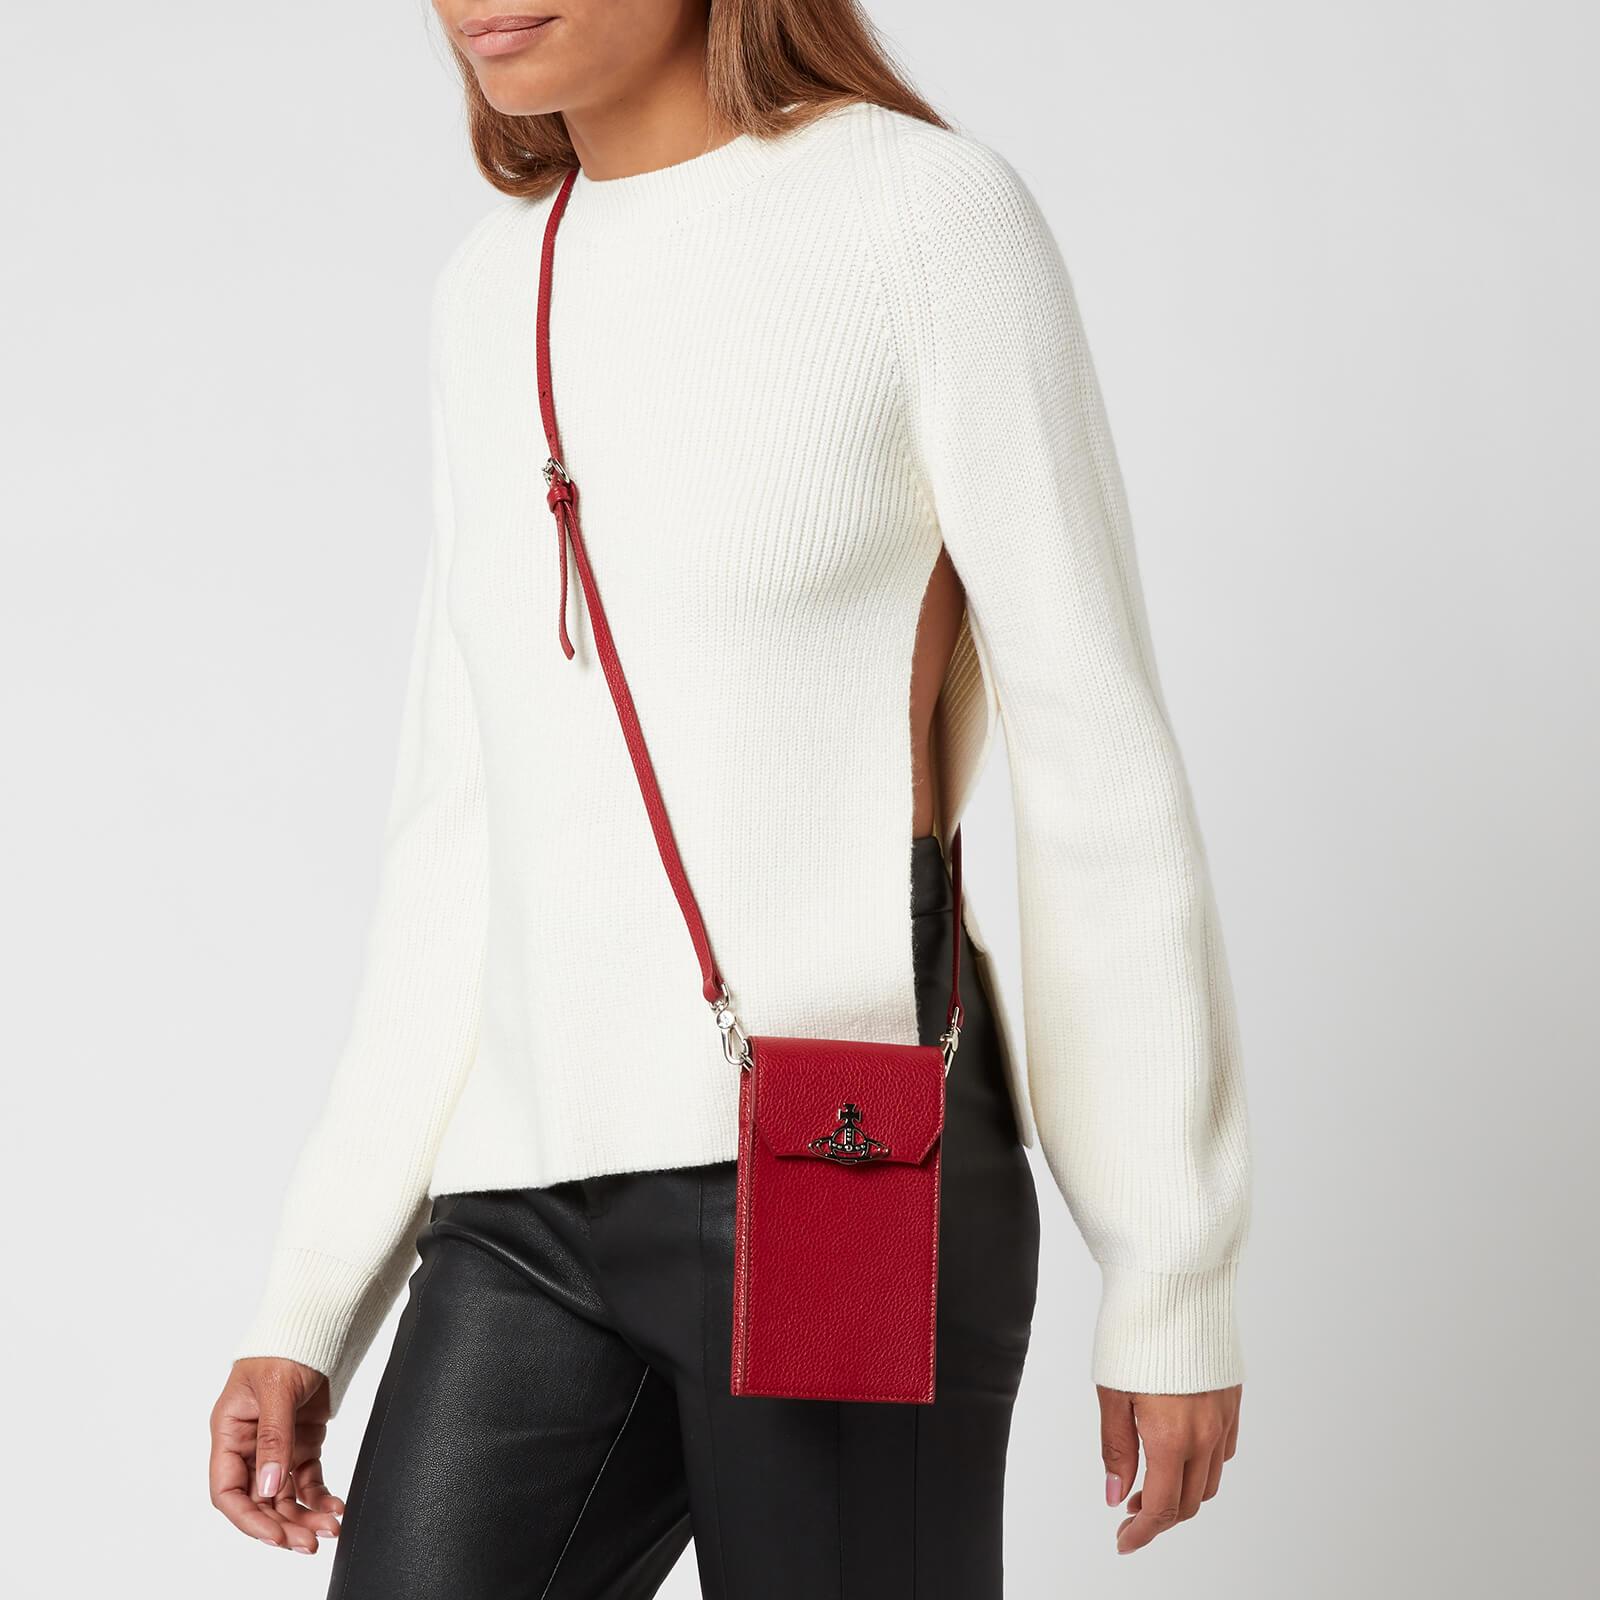 Vivienne Westwood Leather Jordan Phone Bag in Red | Lyst Australia